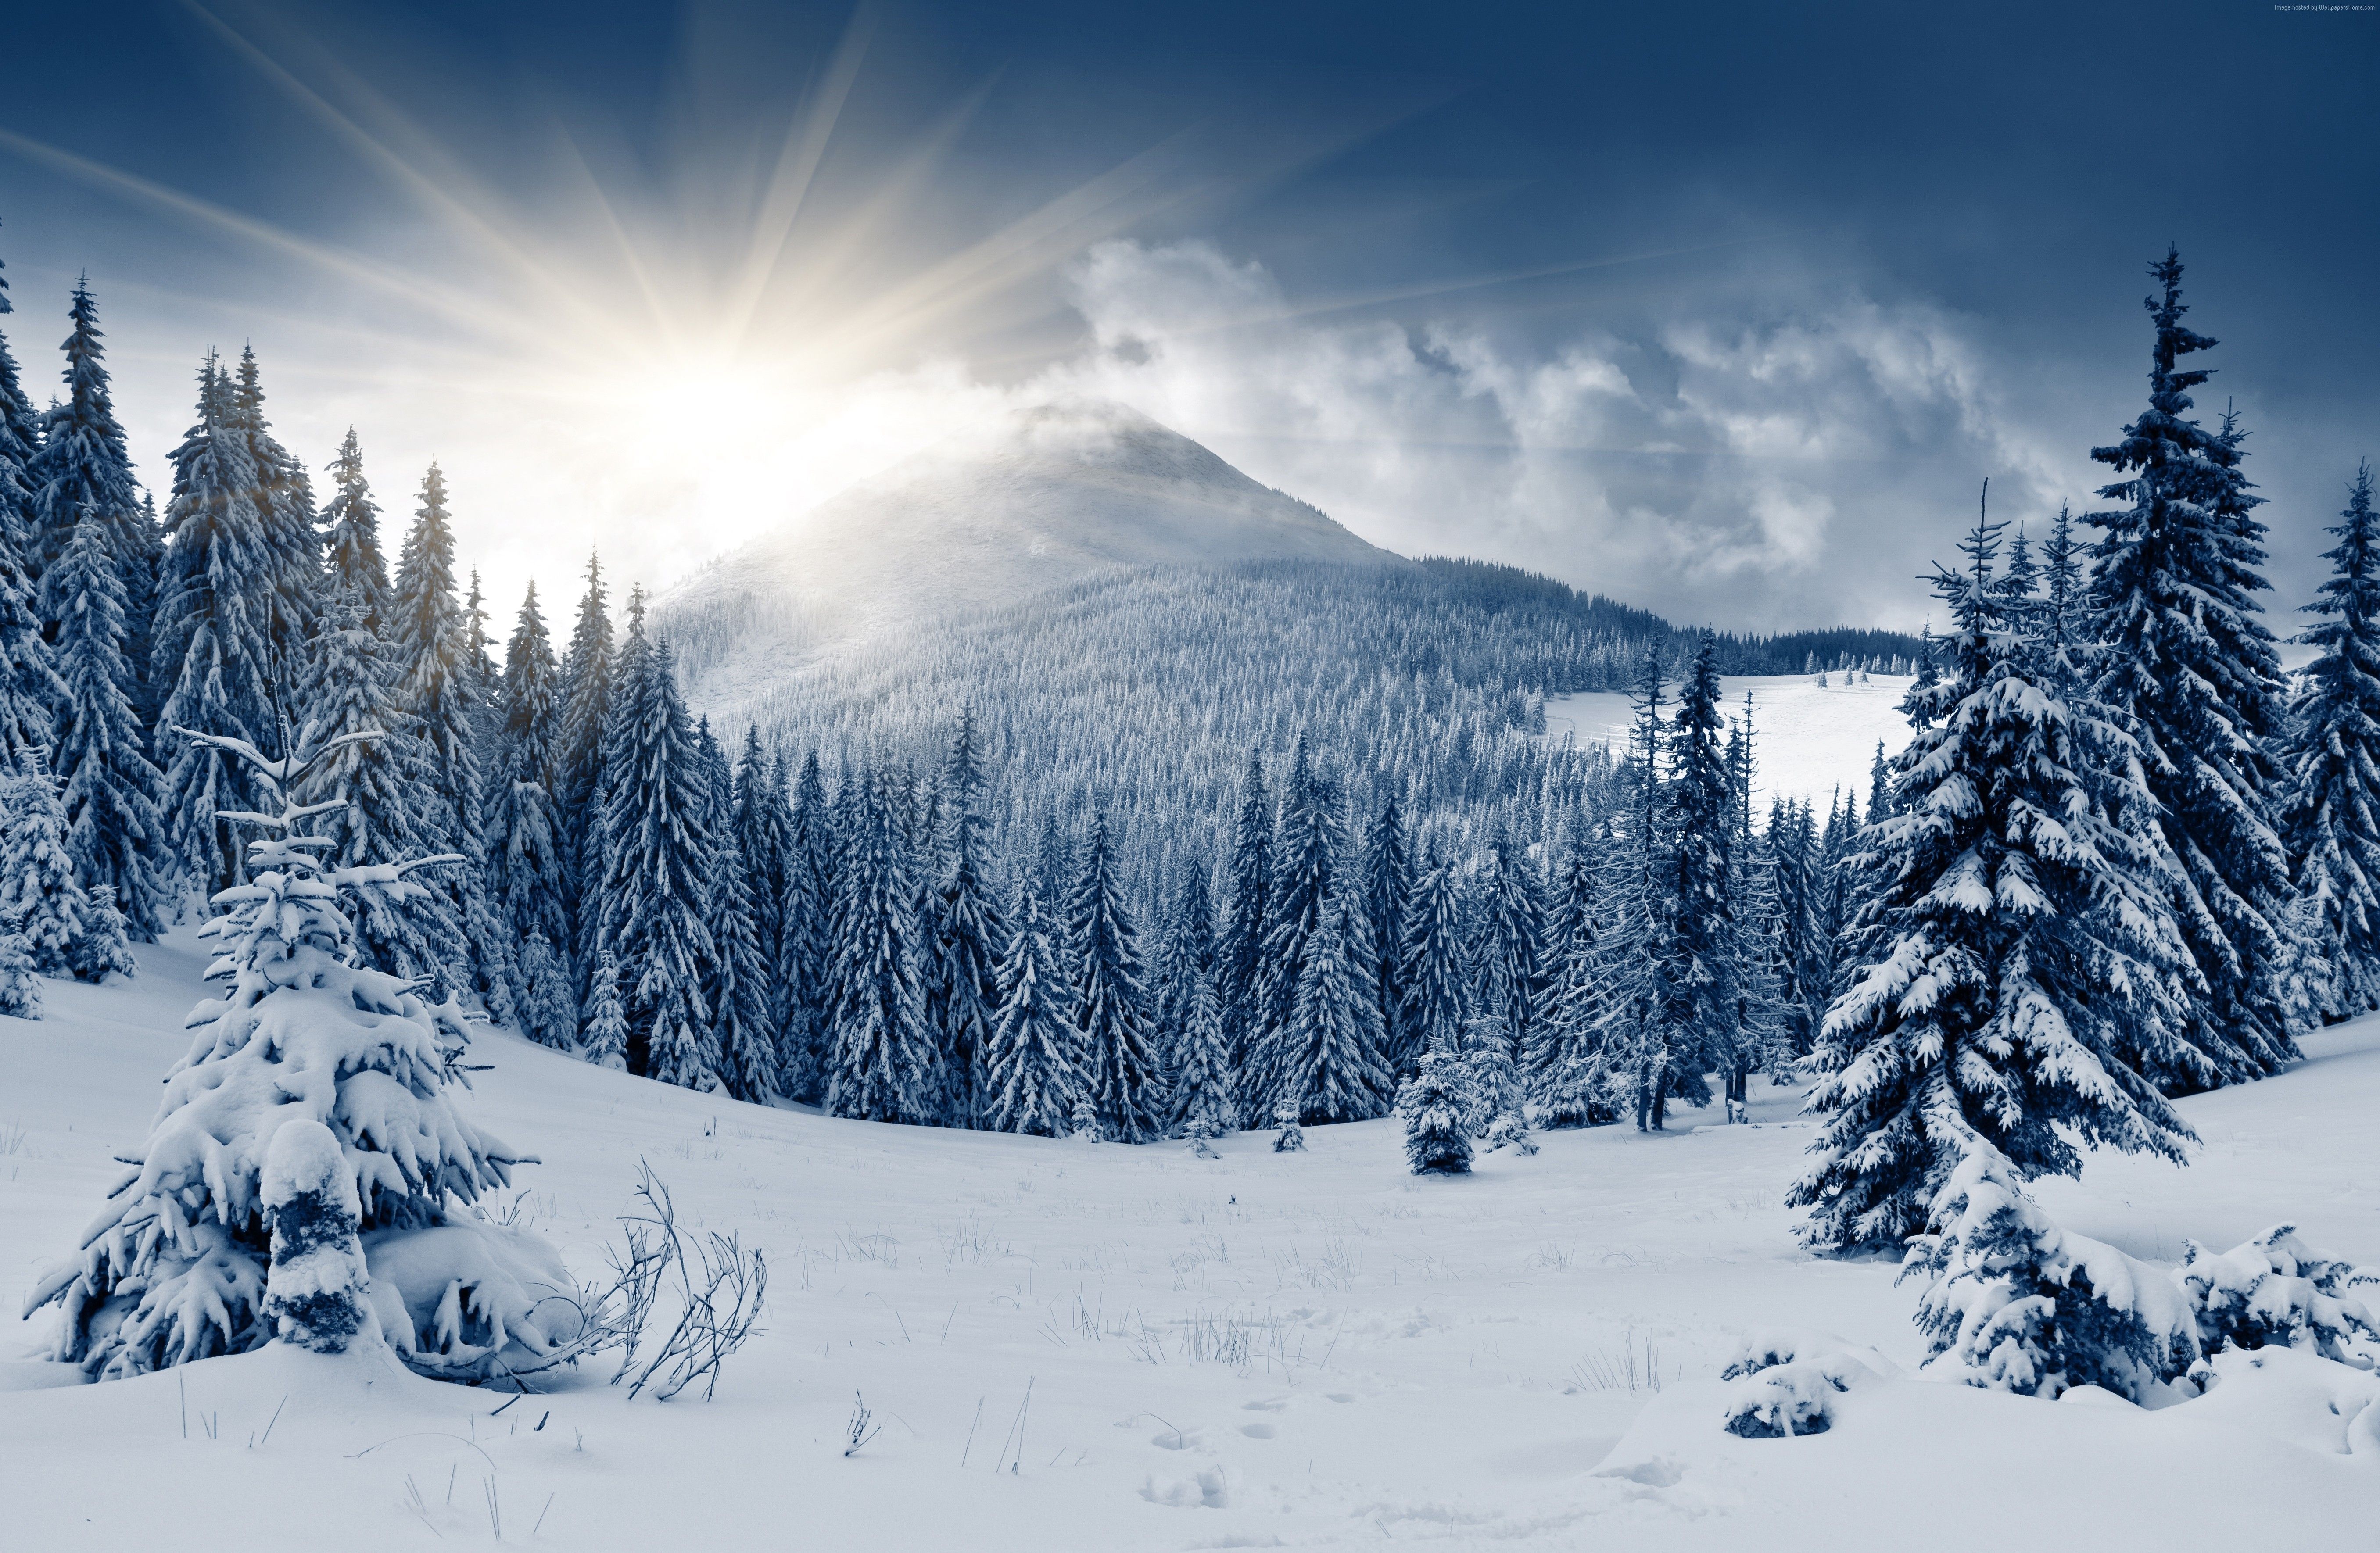 Winter Forest Wallpaper, Nature / Forest: Winter Forest, Mountain, Sun, Snow, Fir Trees. Winter Landscape, Winter Forest, Forest Landscape